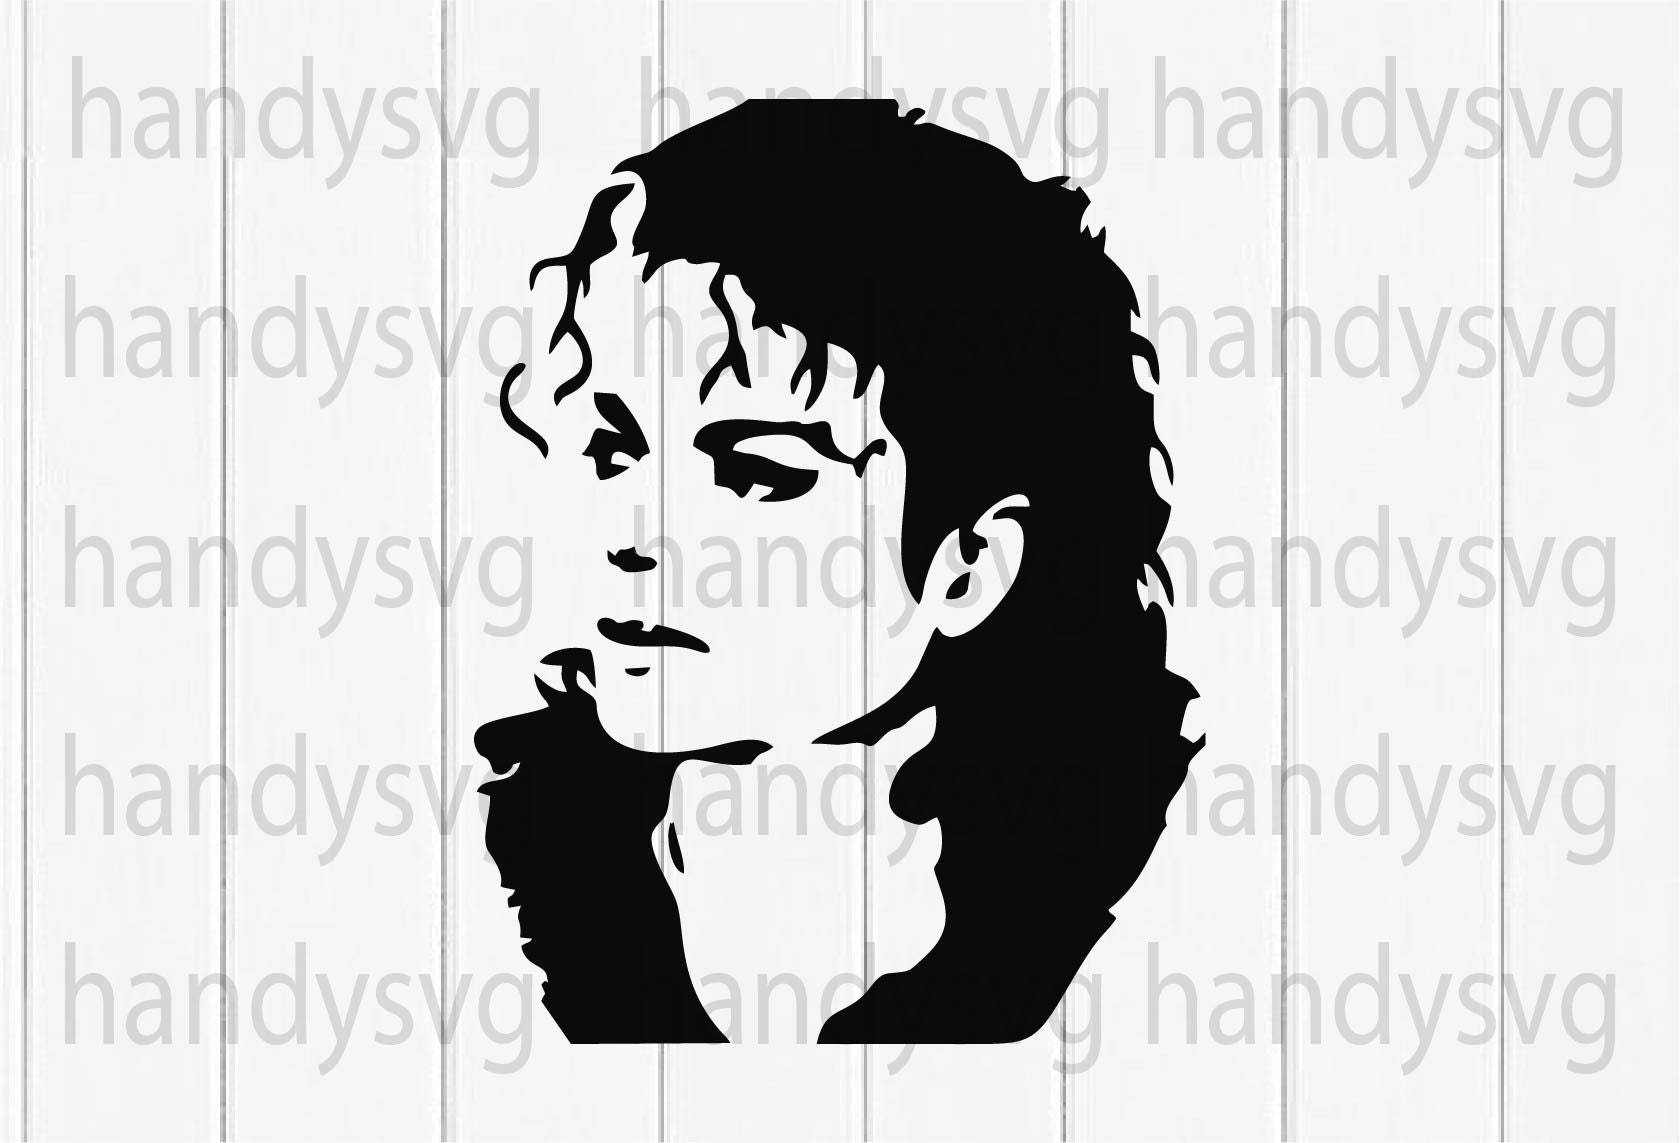 Stencil en vinilo adhesivo para decoración interior Michael Jackson 04209  - Vinilos decorativos personalizados - Tienda online de vinilos decorativos  al mejor precio